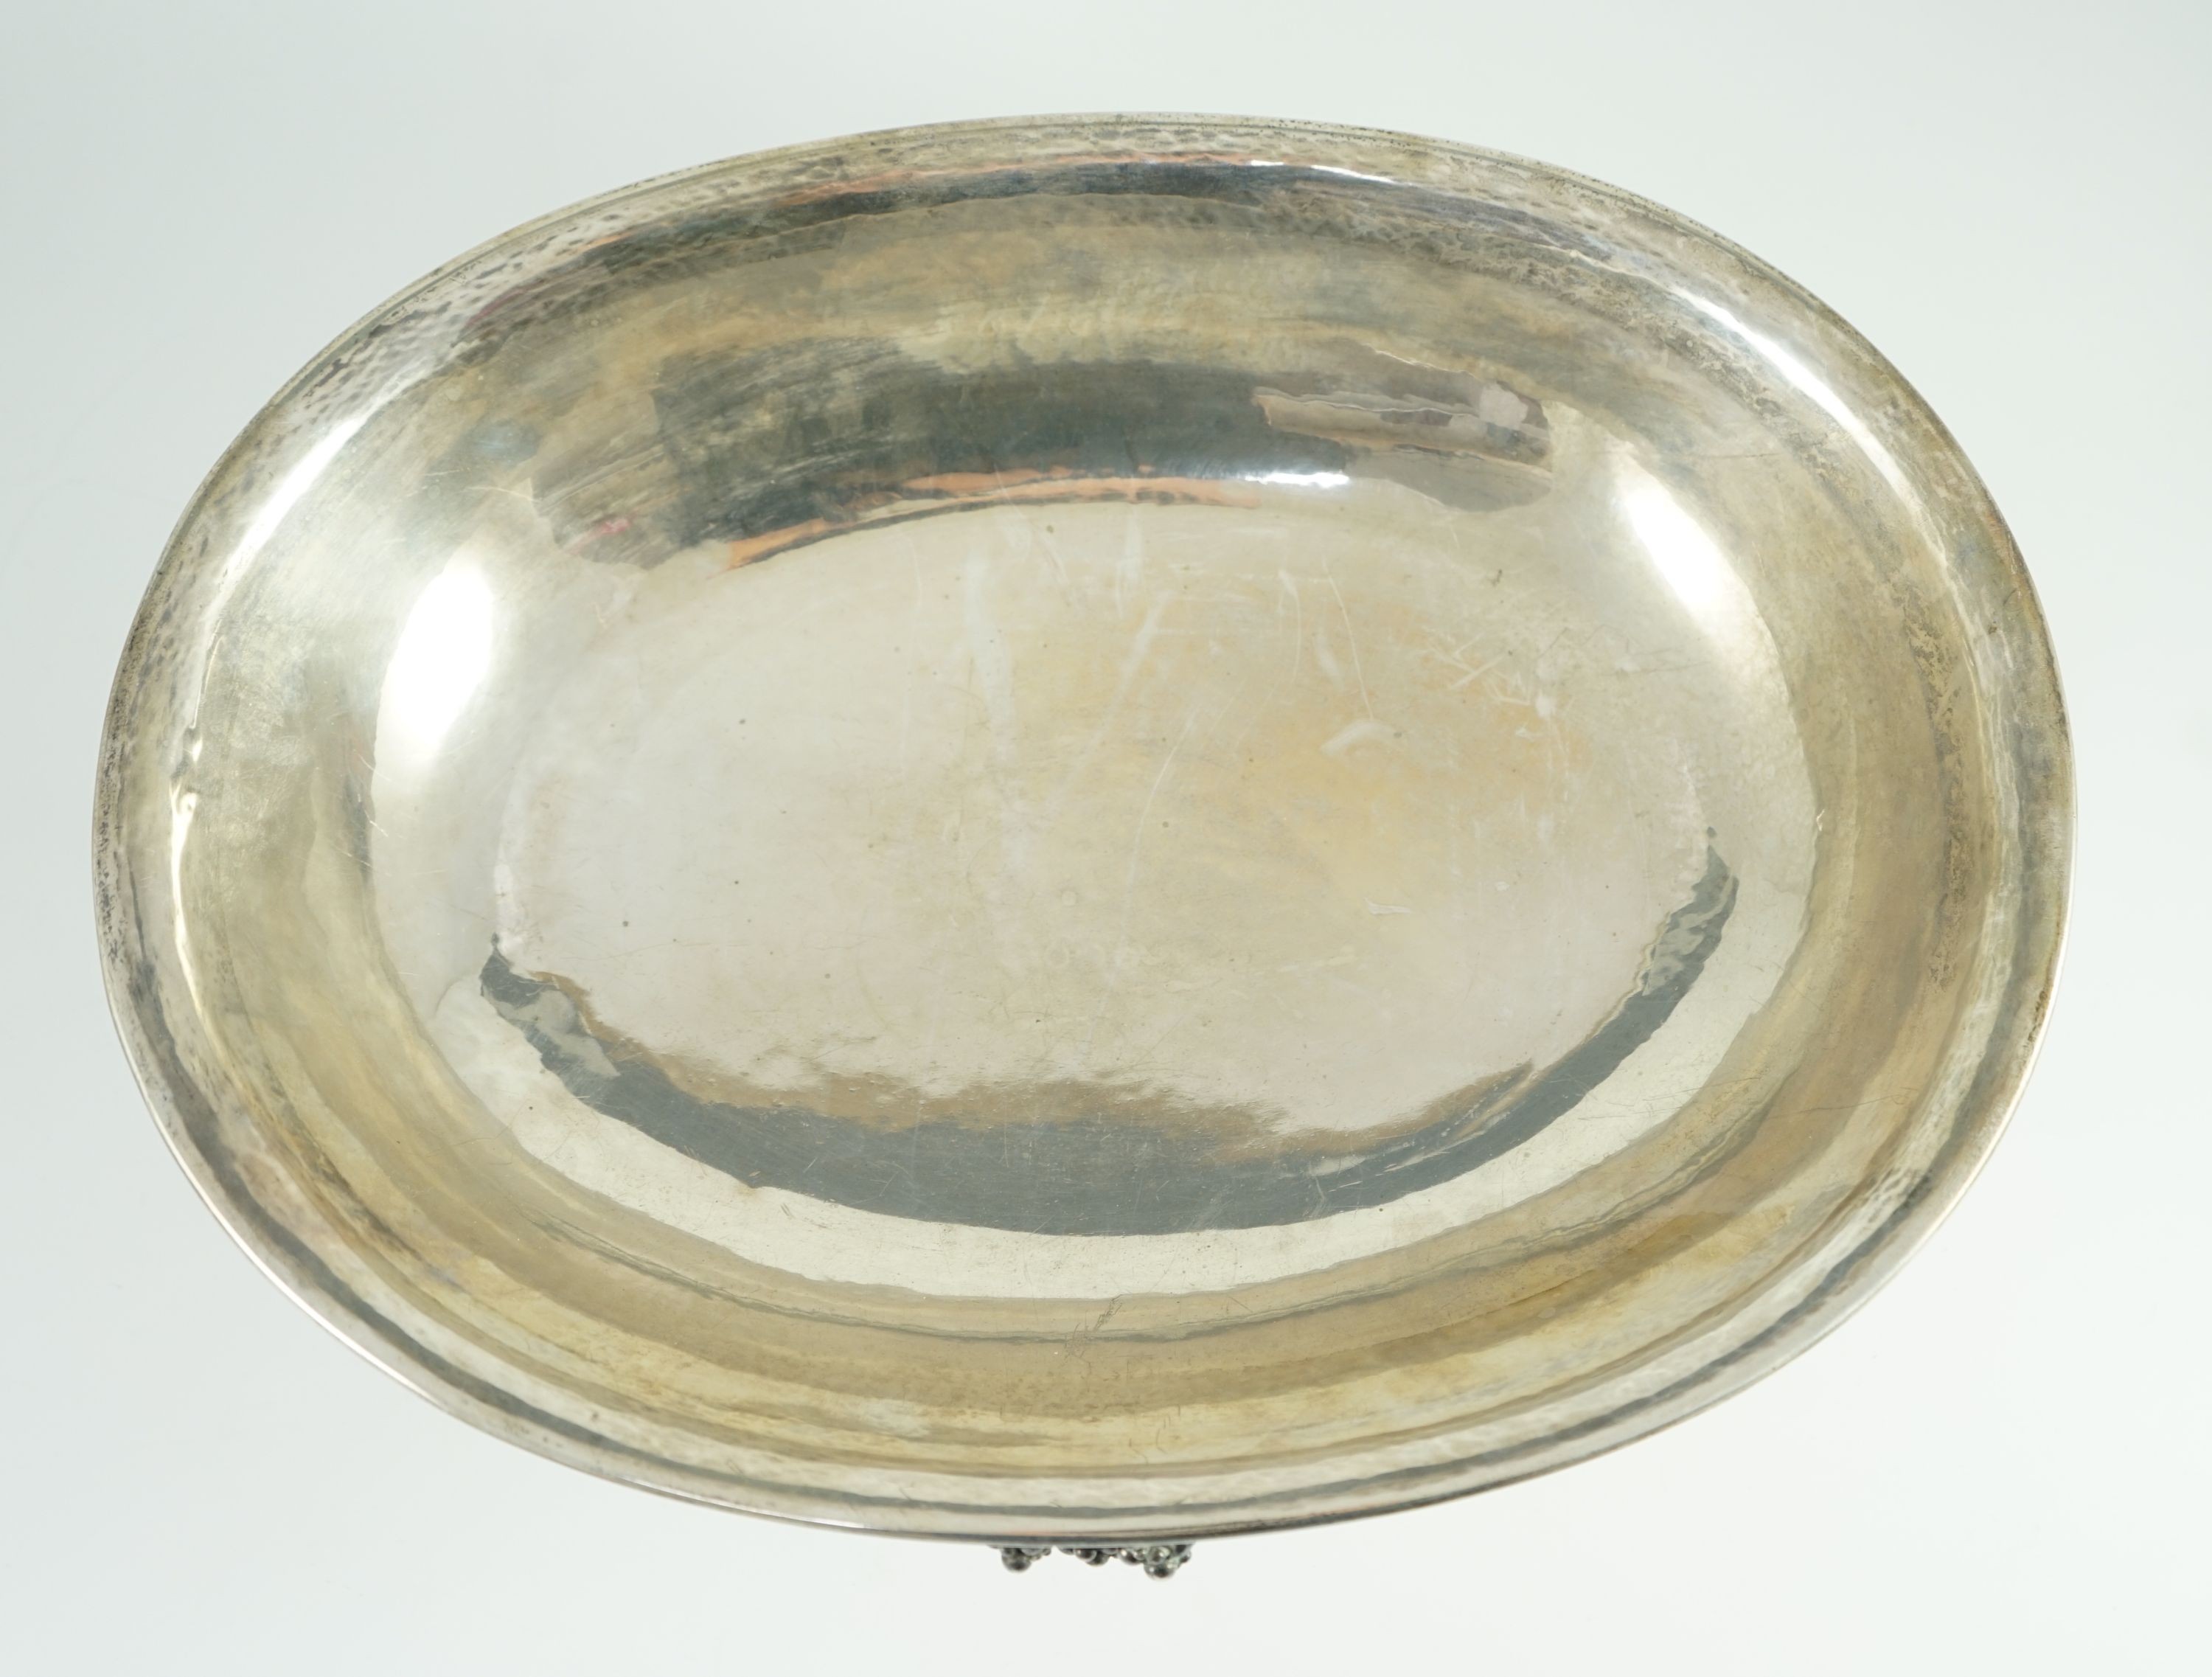 A good George V Georg Jensen planished silver Grape pattern oval pedestal fruit bowl, design no. 296